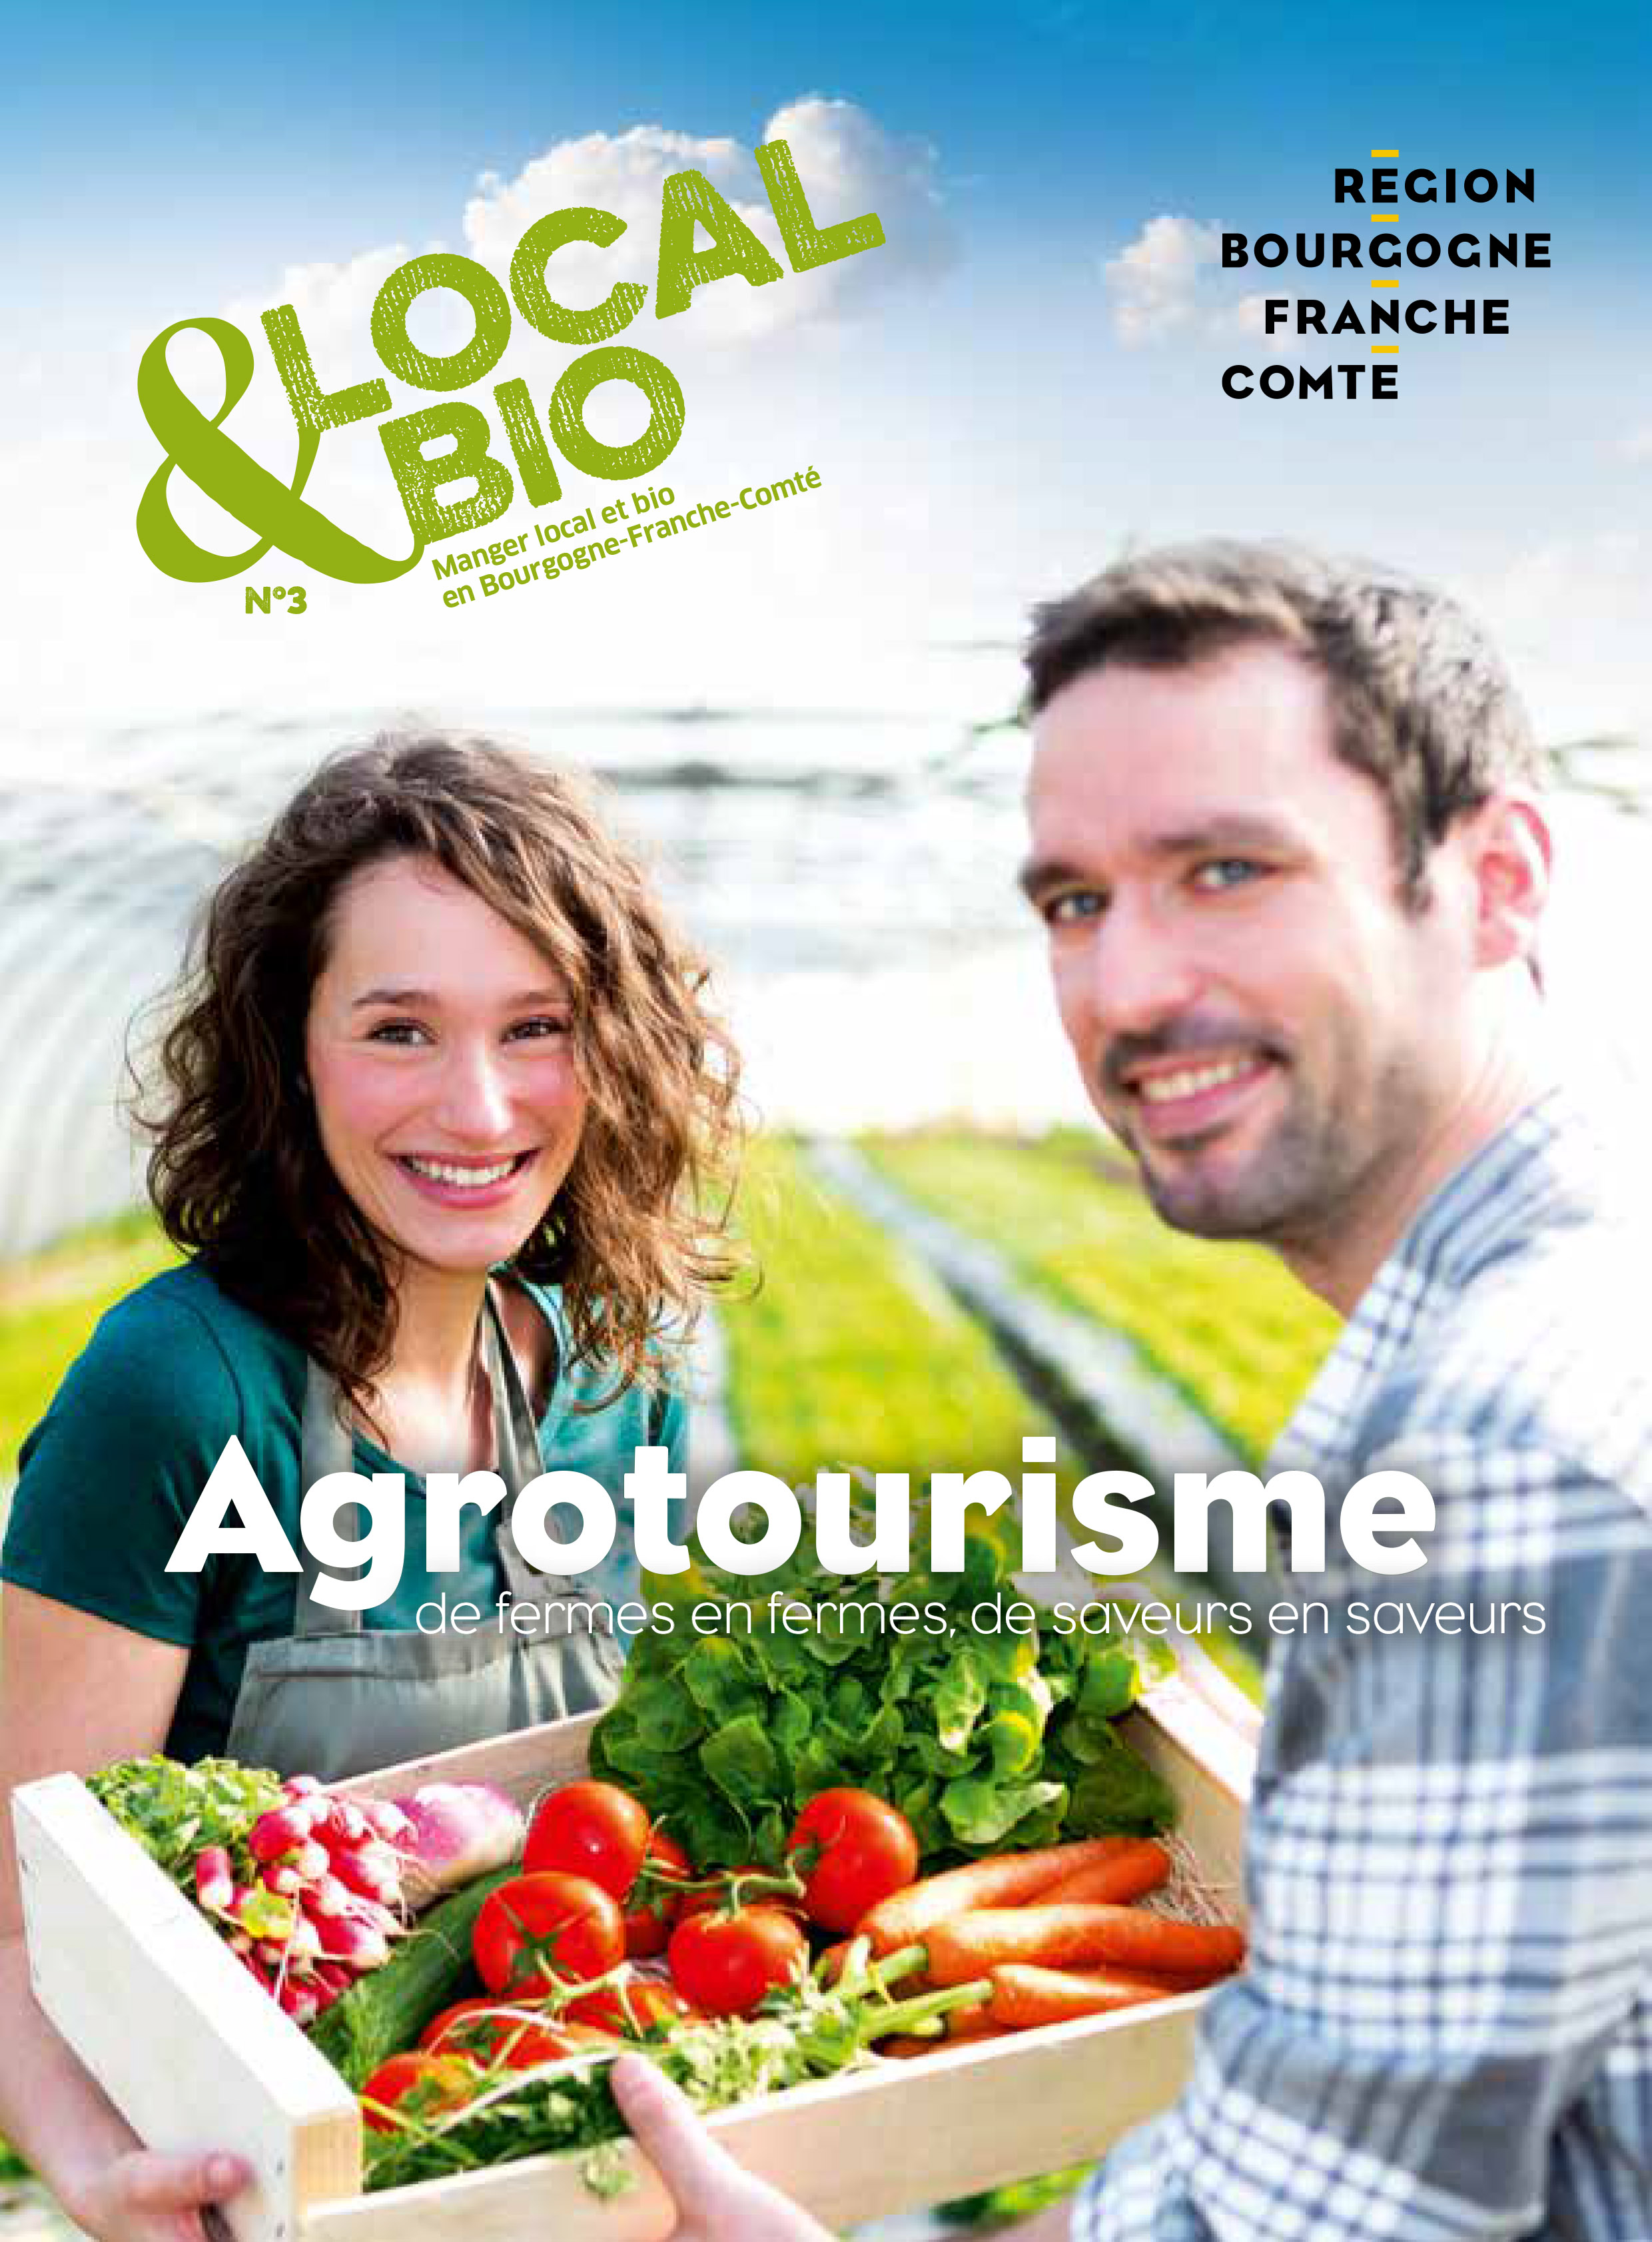 Manger local et bio en Bourgogne-Franche-Comté - Numéro 3